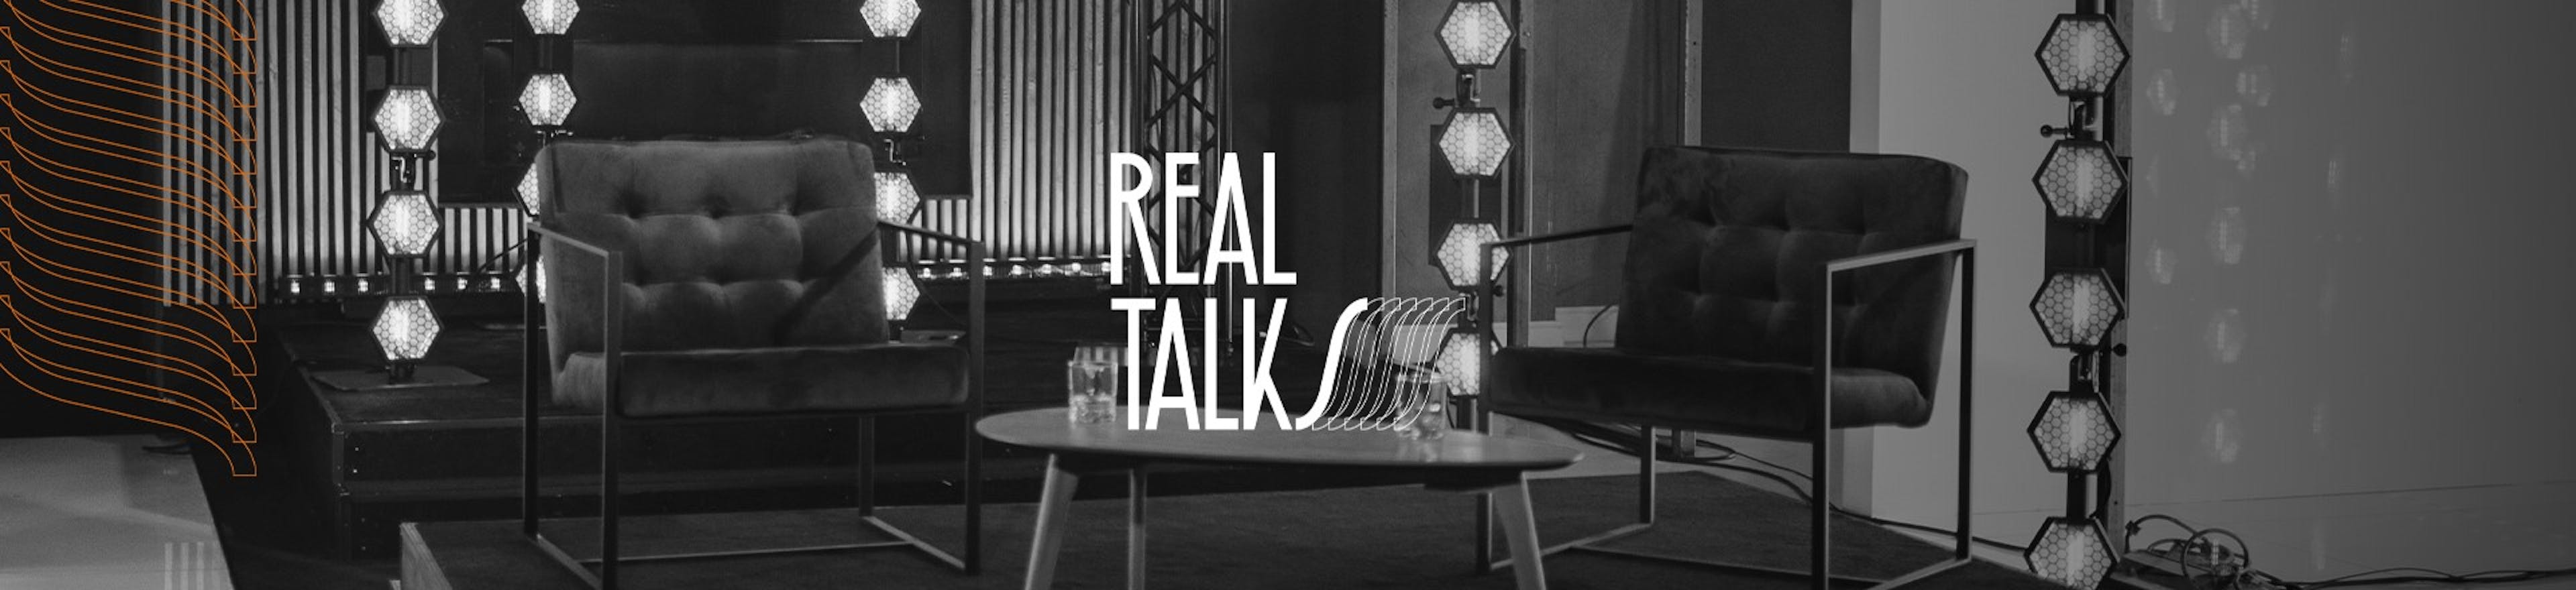 REAL TALKS - die Show mit Flo Stielper